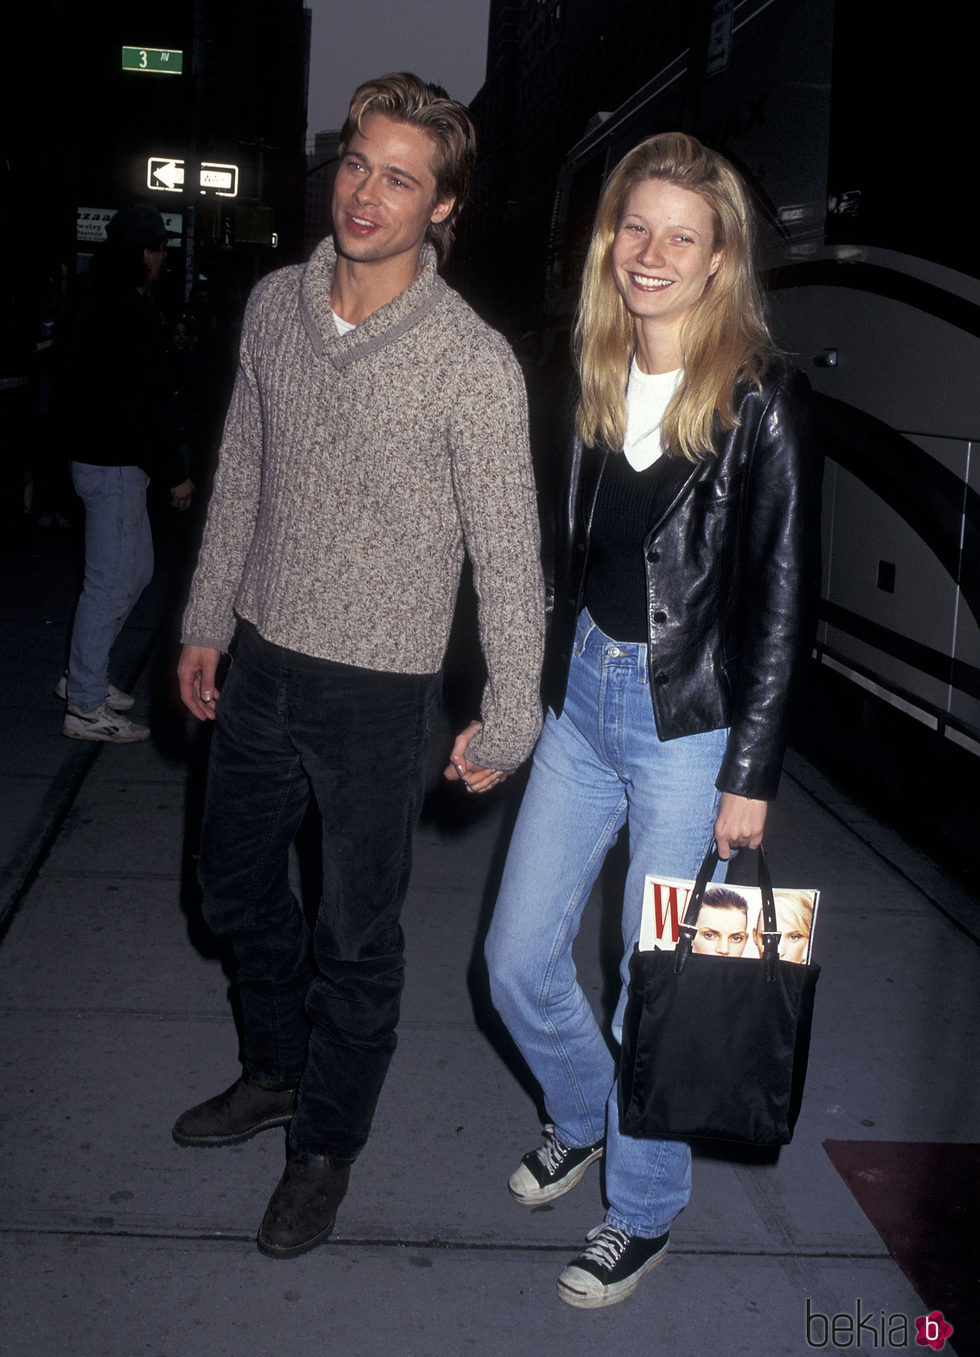 Brad Pitt y Gwyneth Paltrow cuando eran jóvenes